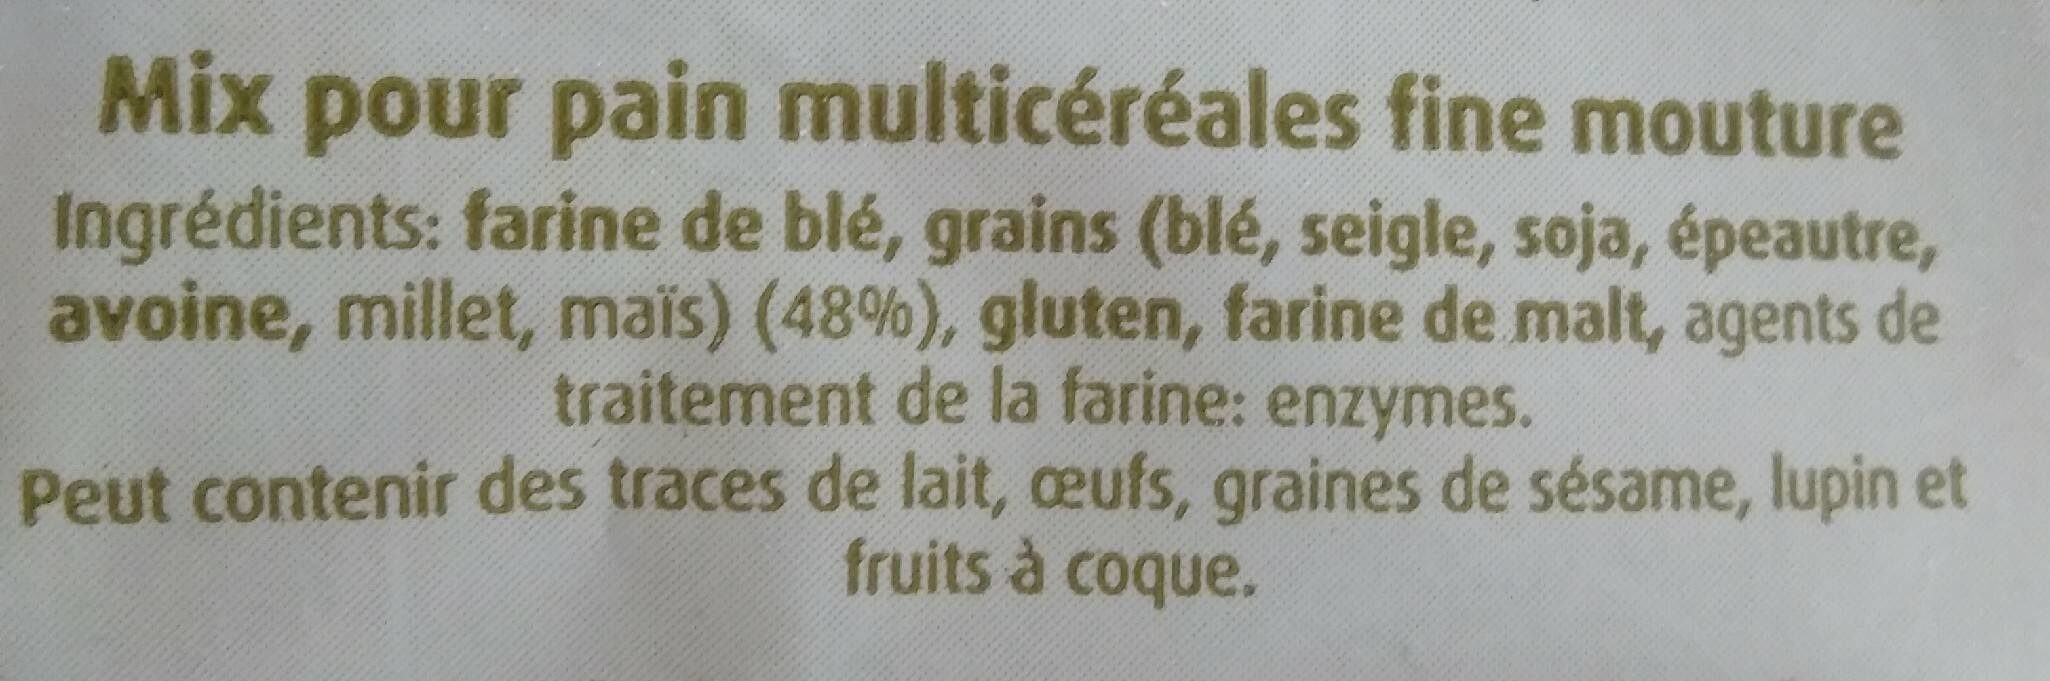 Farine mix pour pain multicéréales - Ingredients - fr